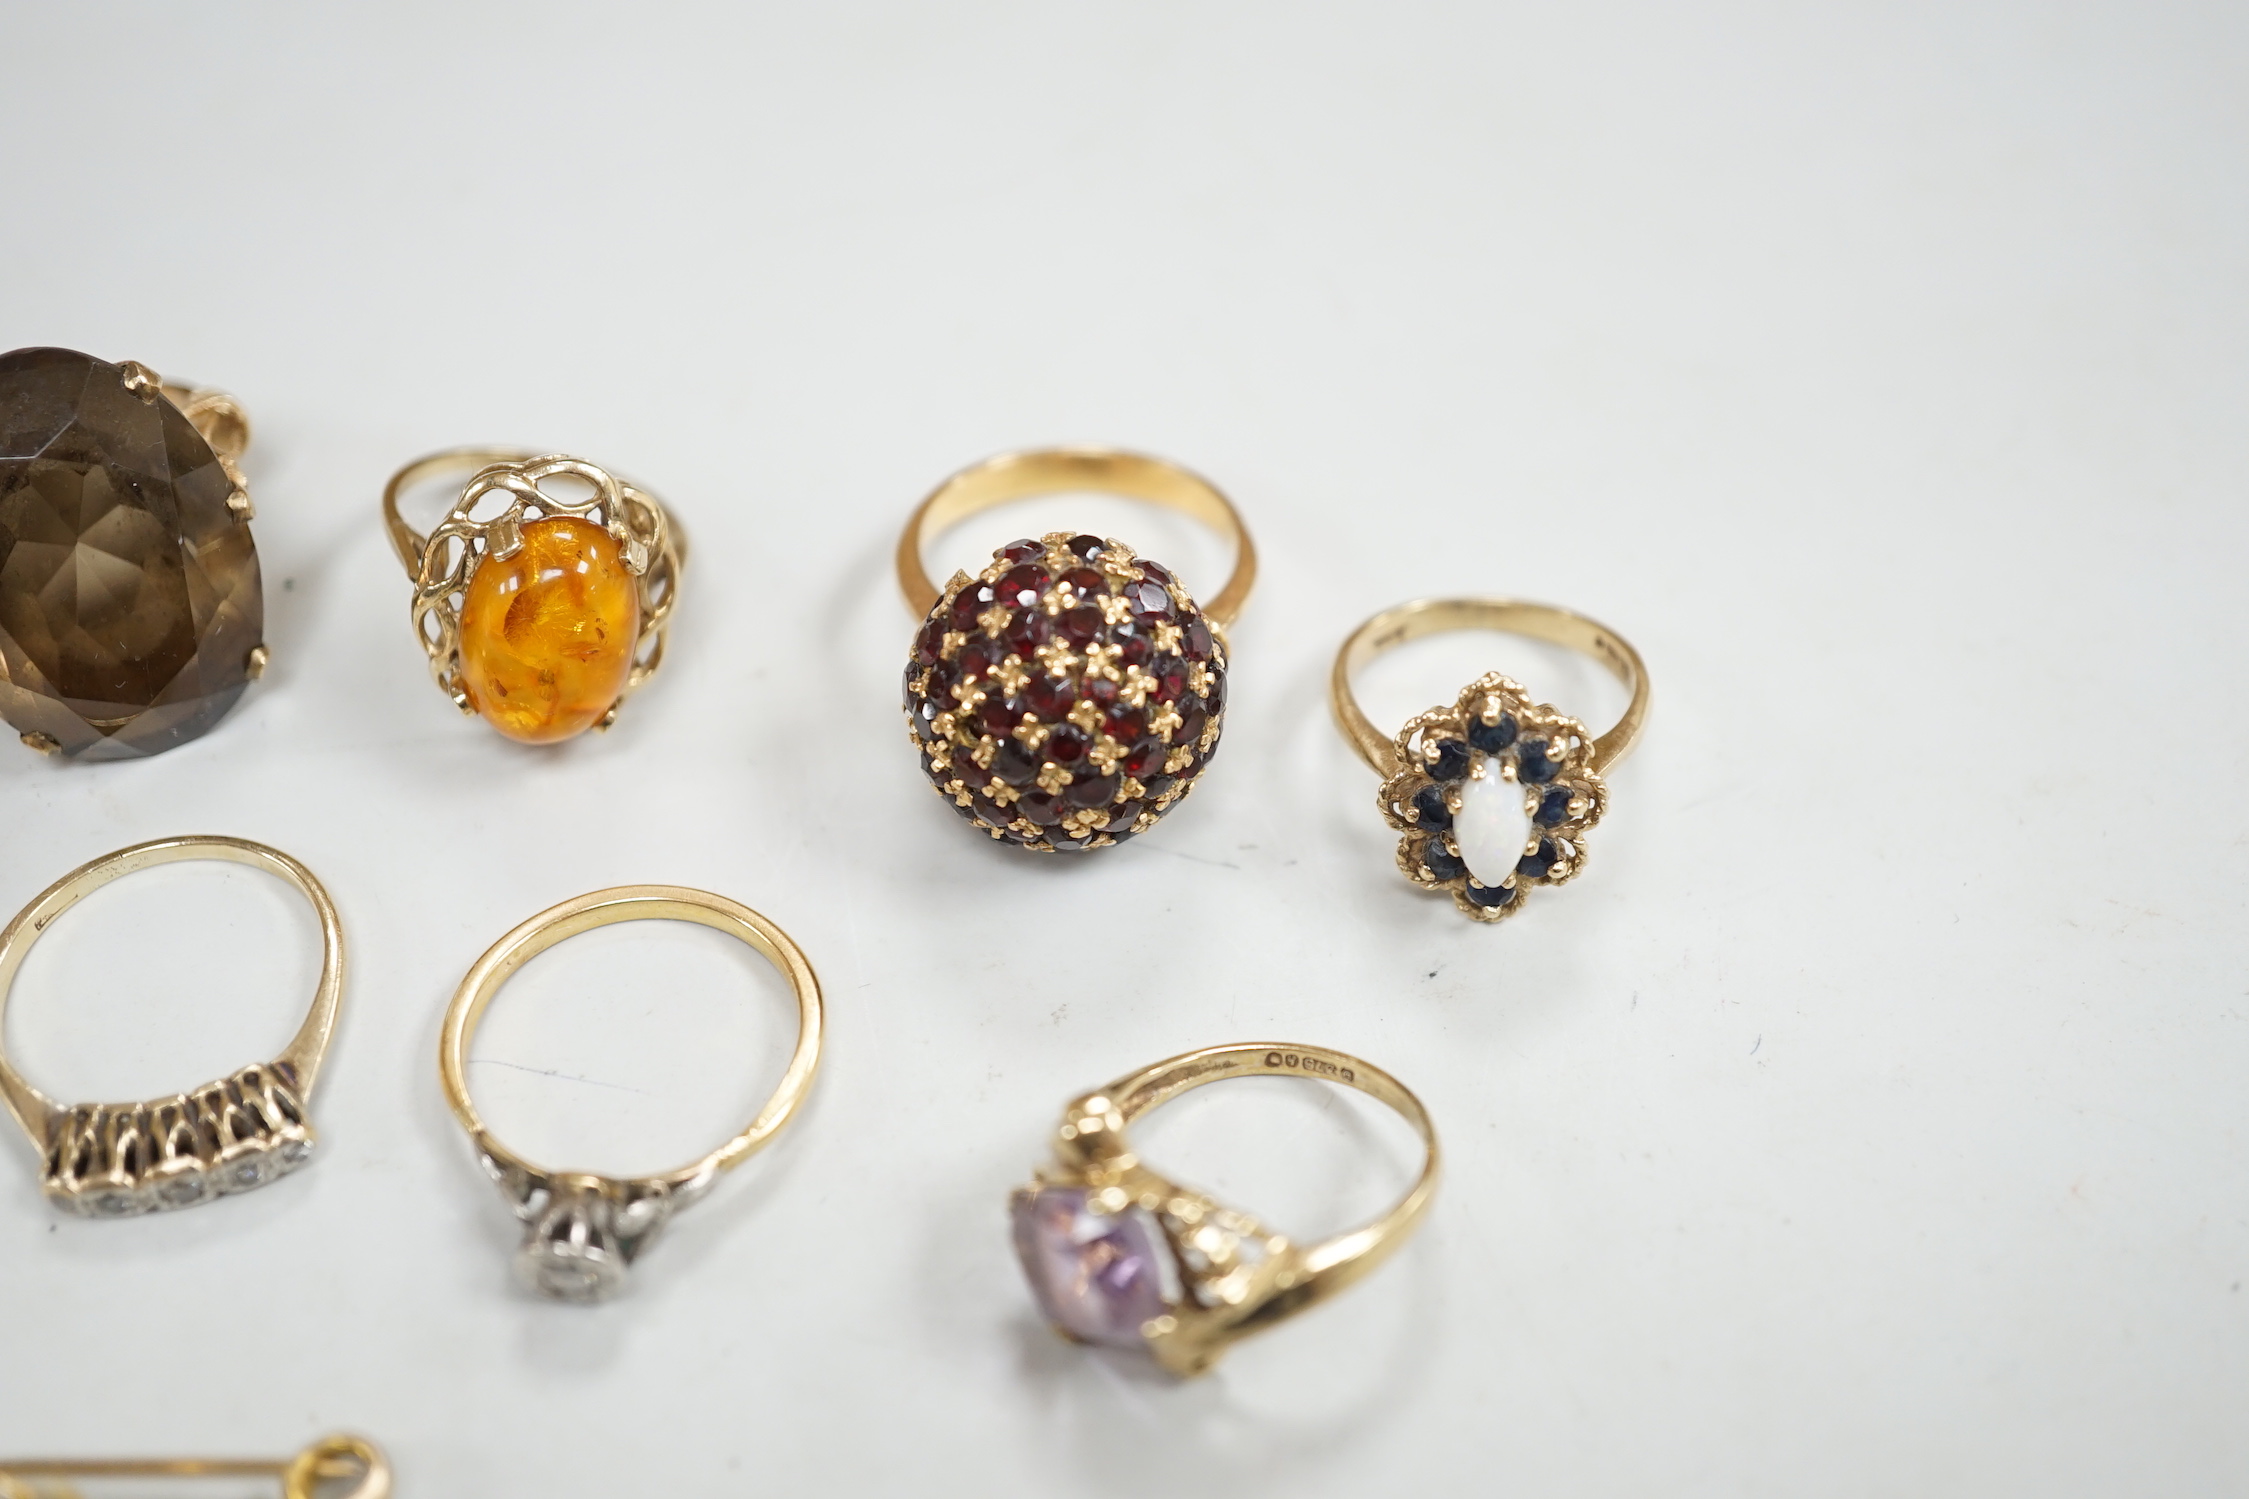 Two yellow metal and illusion set diamond rings, two 9ct gold and gem set rings, two yellow metal and gem set rings and two brooches, including 9ct mounted cameo shell.